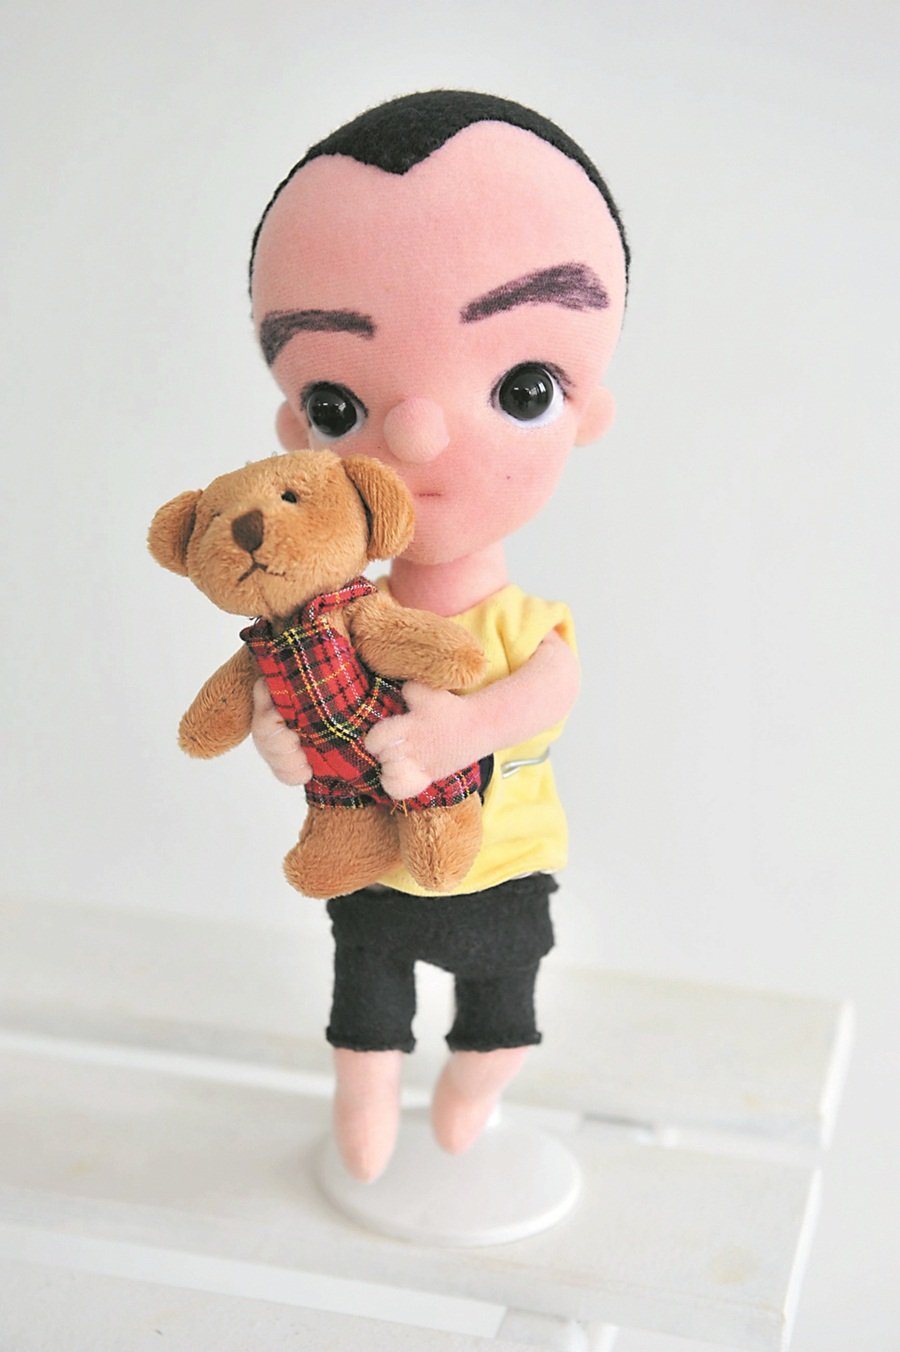 张家瑞是他以自身形象做出的娃娃。